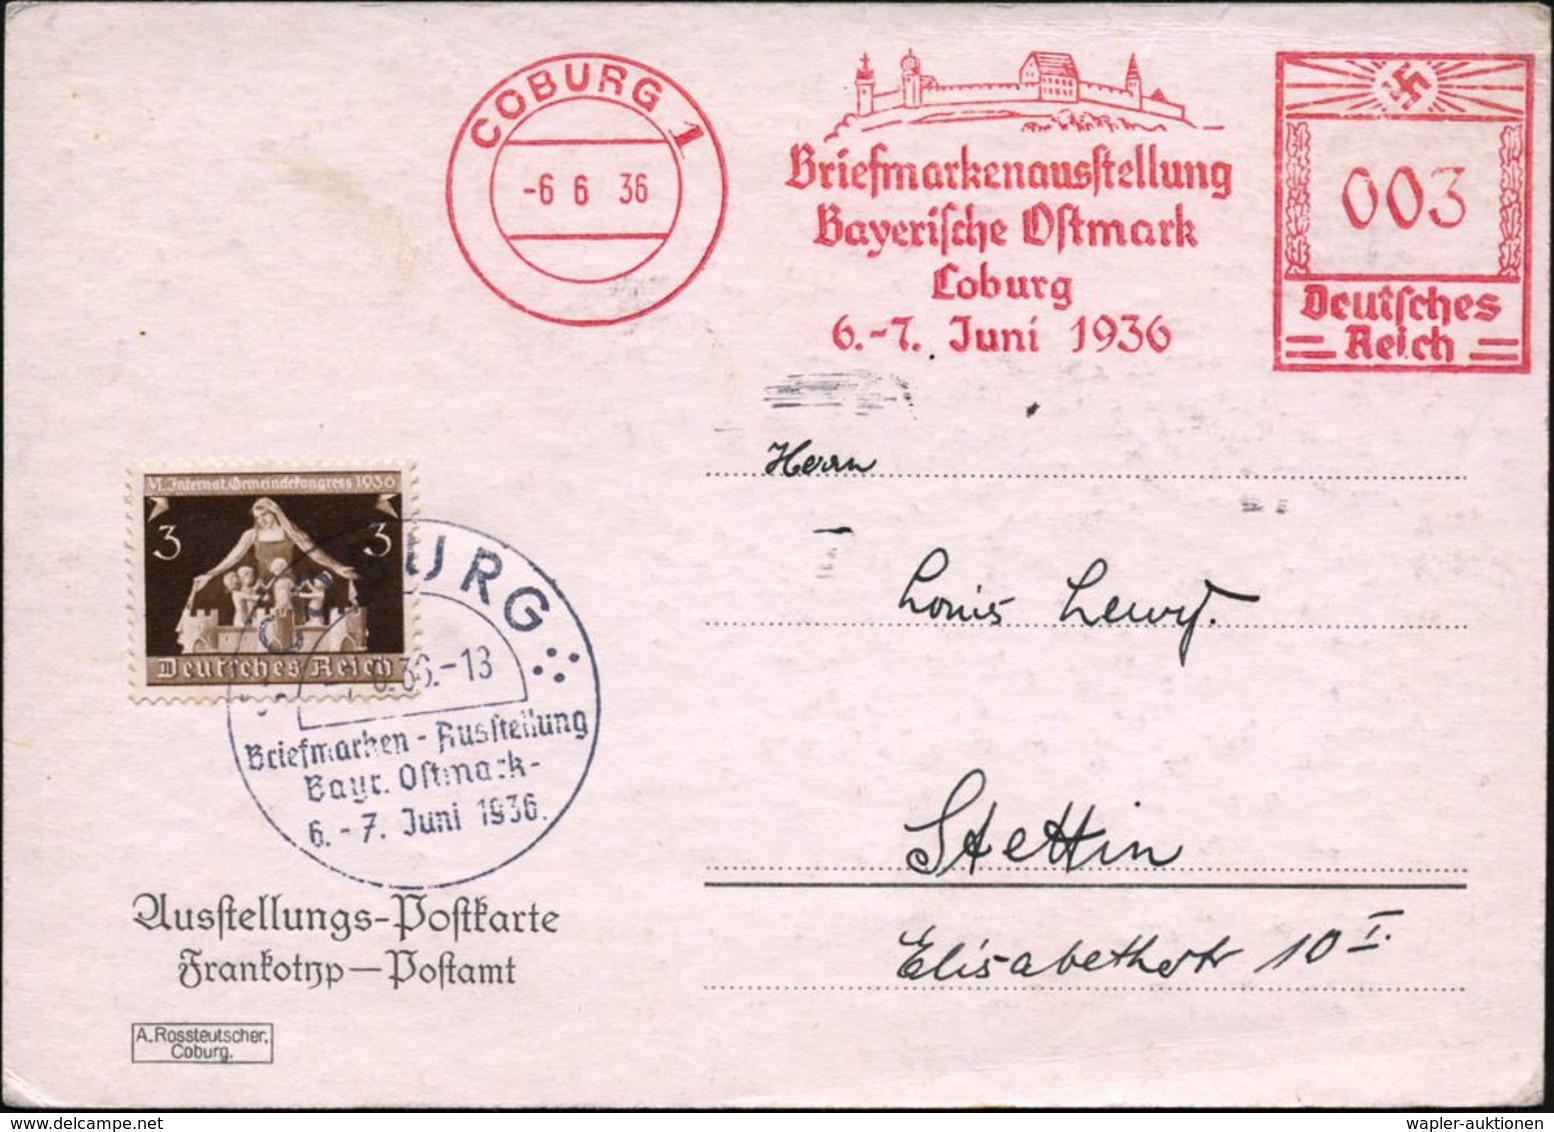 COBURG 1/ Briefmarkenausst./ Bayer.Ostmark/ ..6.-7.Juni 1936 (6.6.) AFS 003 Pf. = Veste Coburg, Lutherstätte + 3 Pf. Zus - Cristianesimo